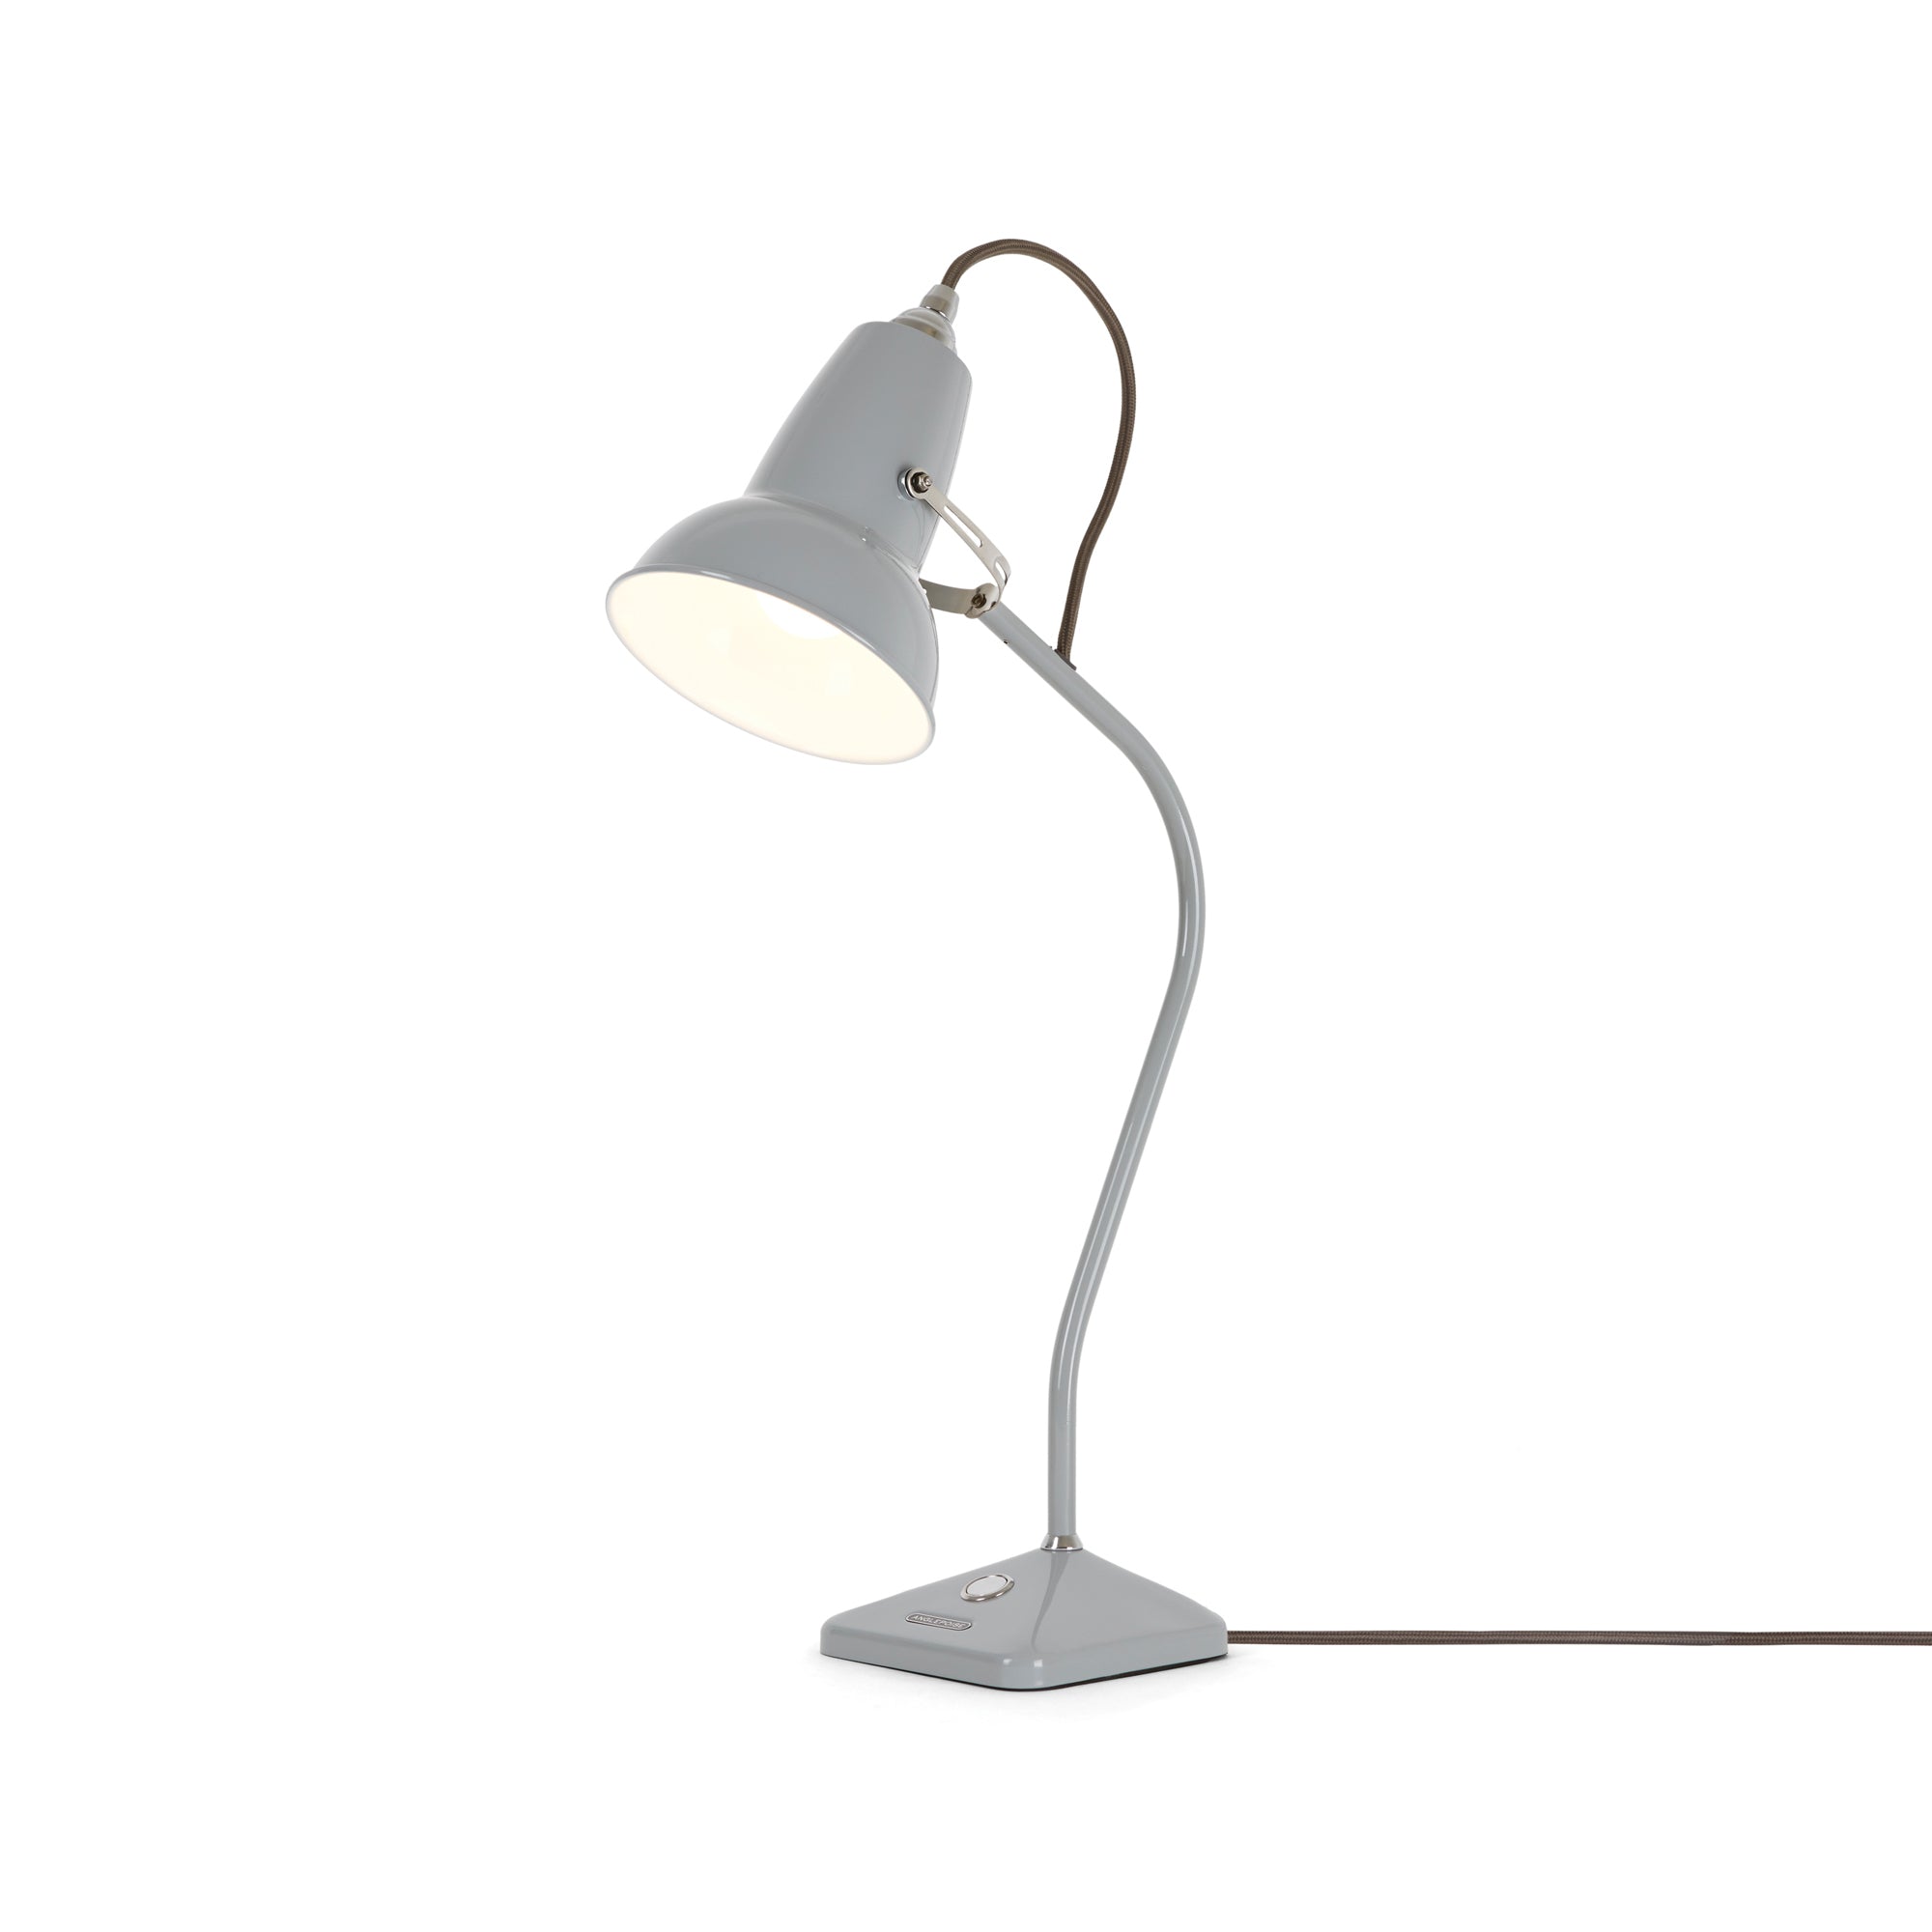 Original 1227 Lamp